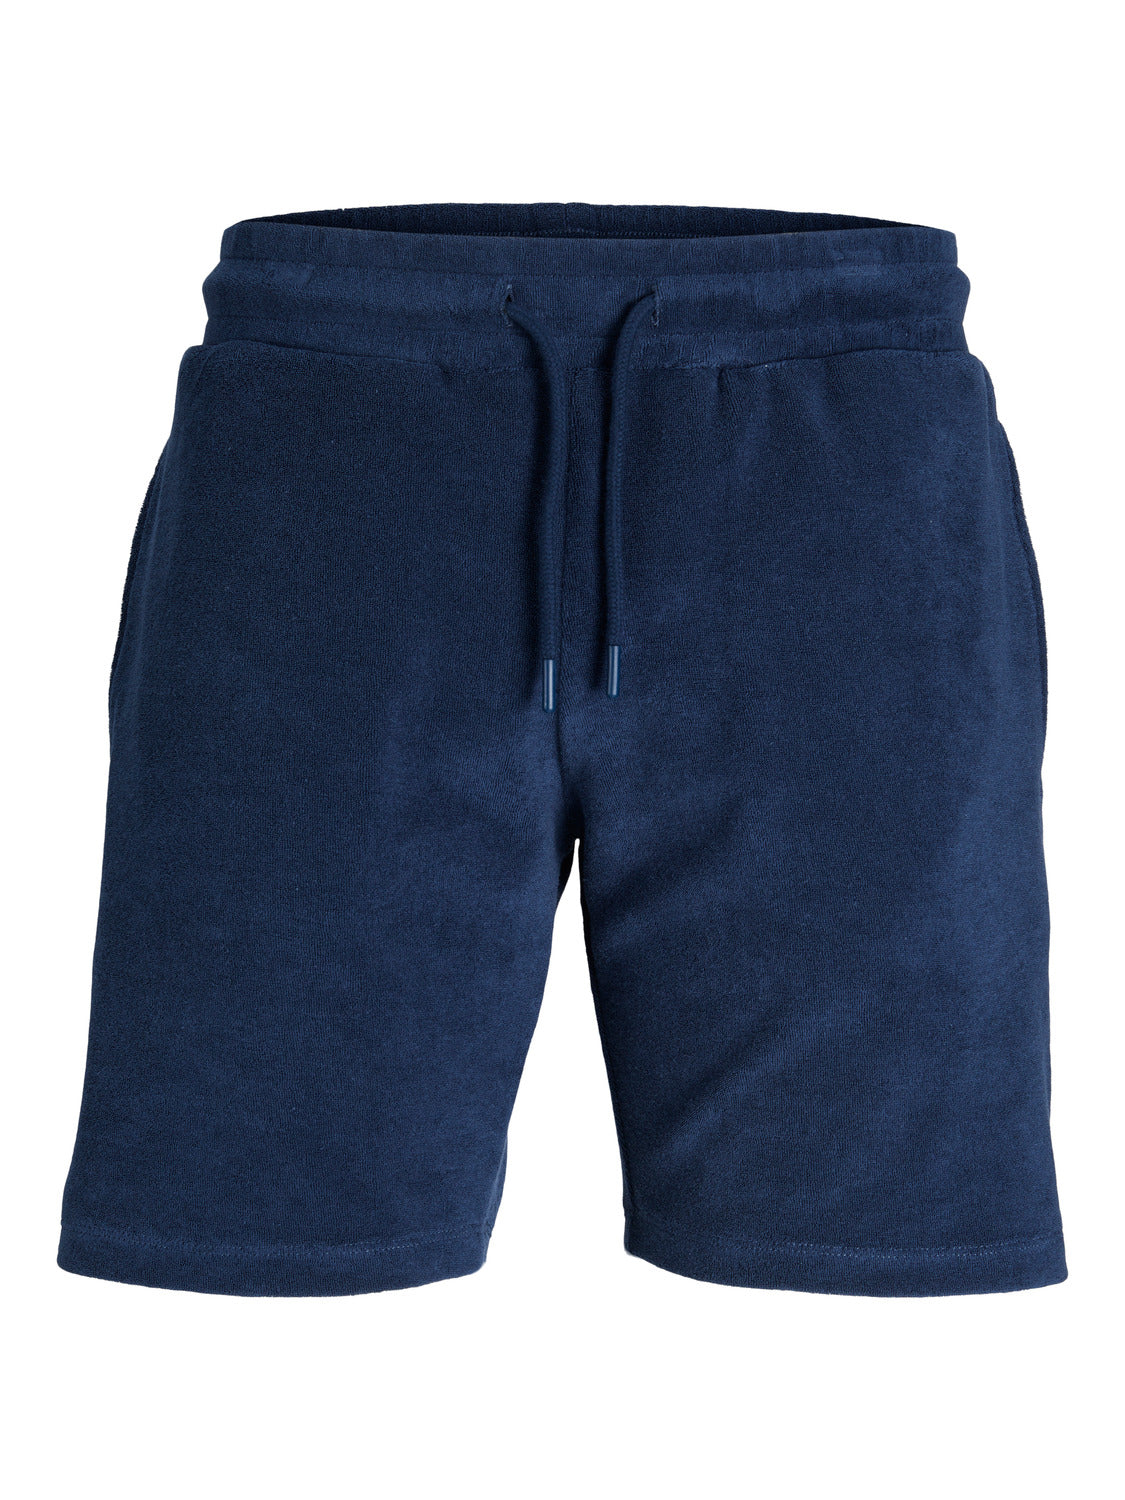 JPRBLA Shorts - Navy Blazer